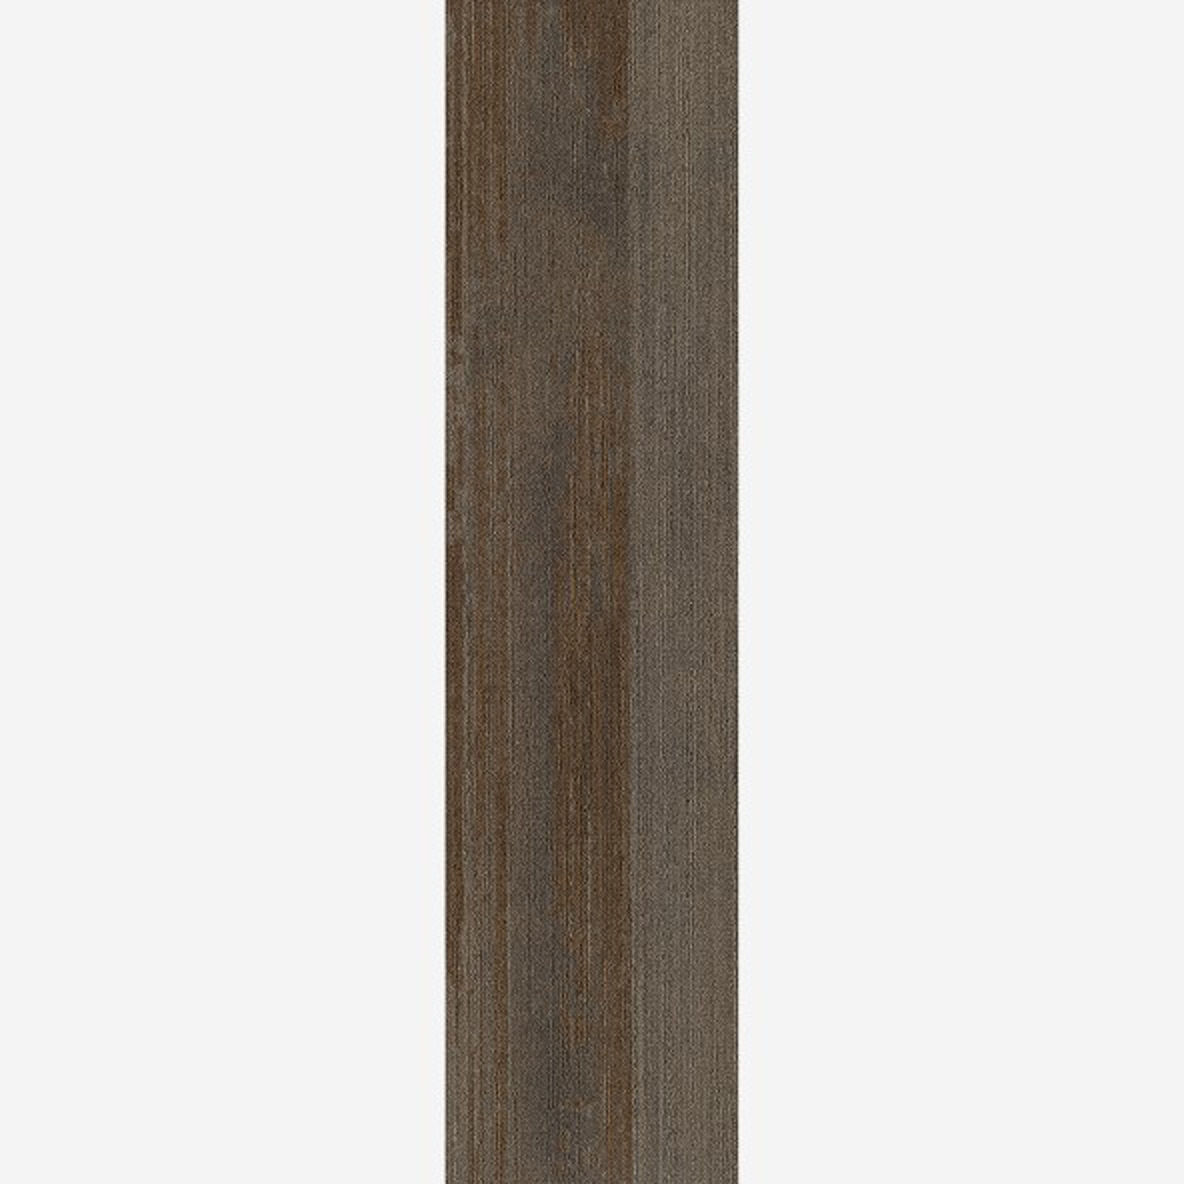 Ingrained Commercial Carpet Plank Neutral .28 Inch x 25 cm x 1 Meter Per Plank Nutmeg Dark Full Tile